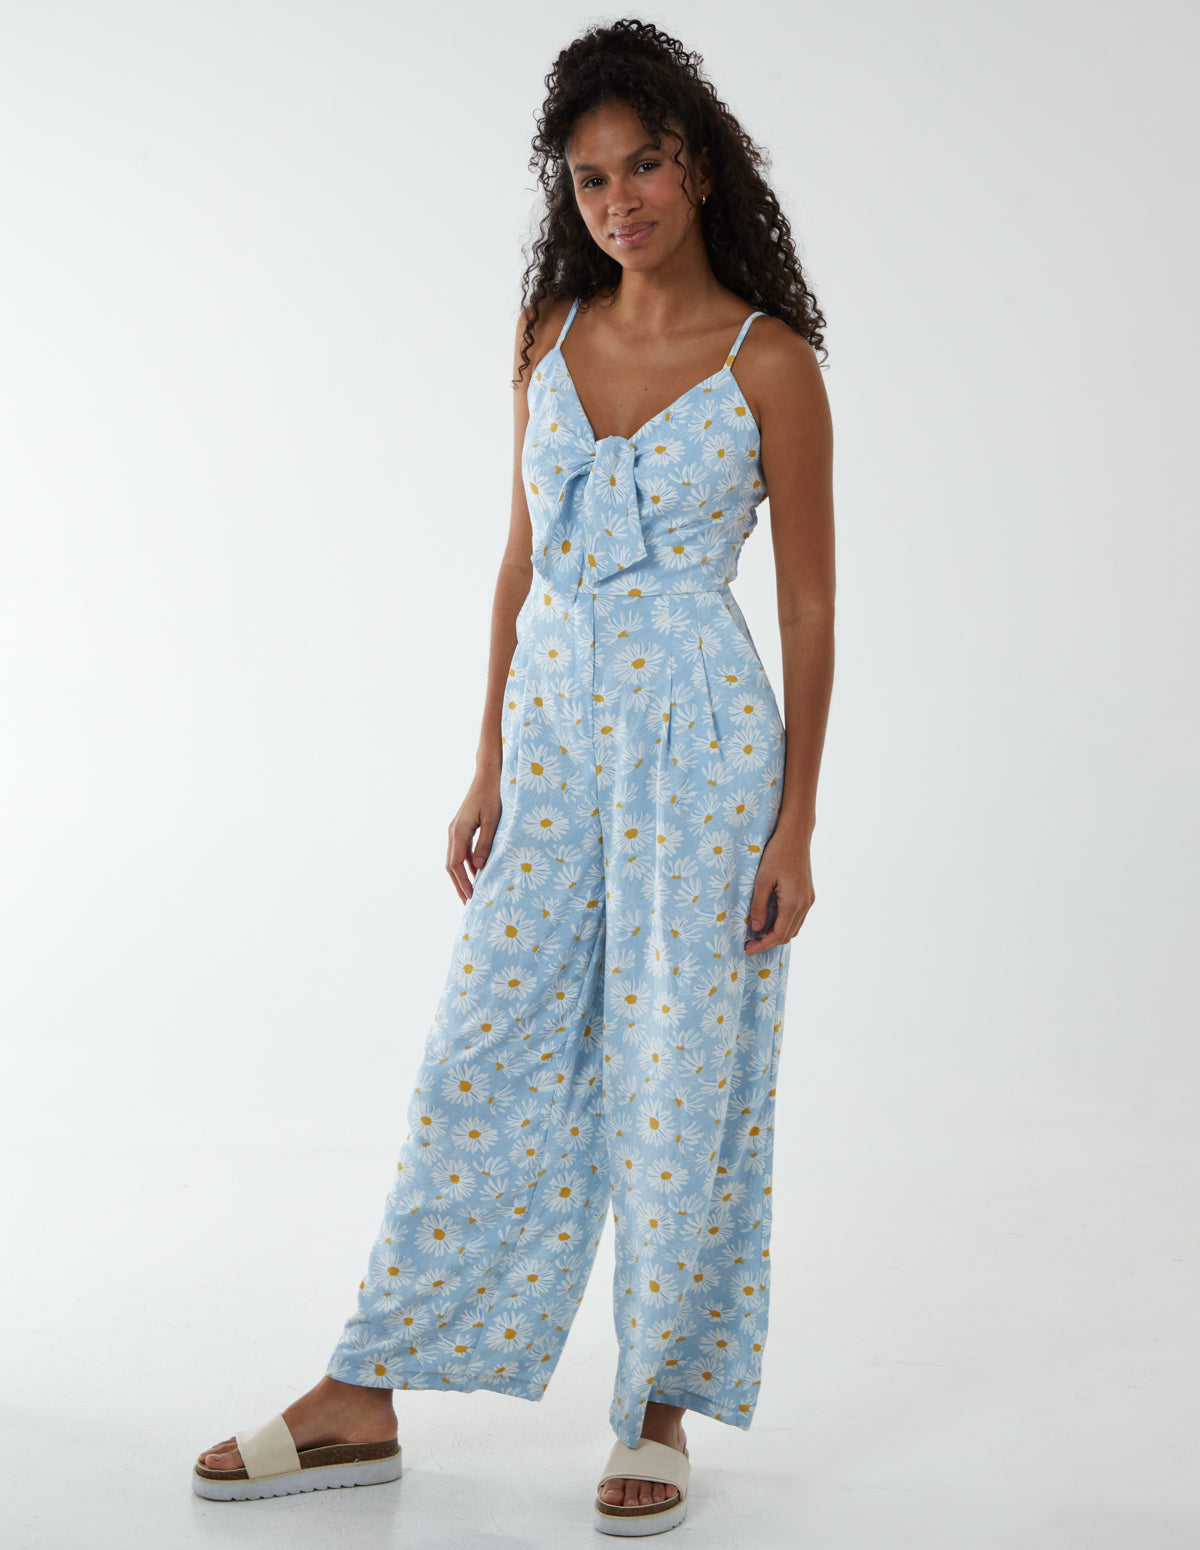 Daisy Print Tie Front Jumpsuit - 8 / BLUE